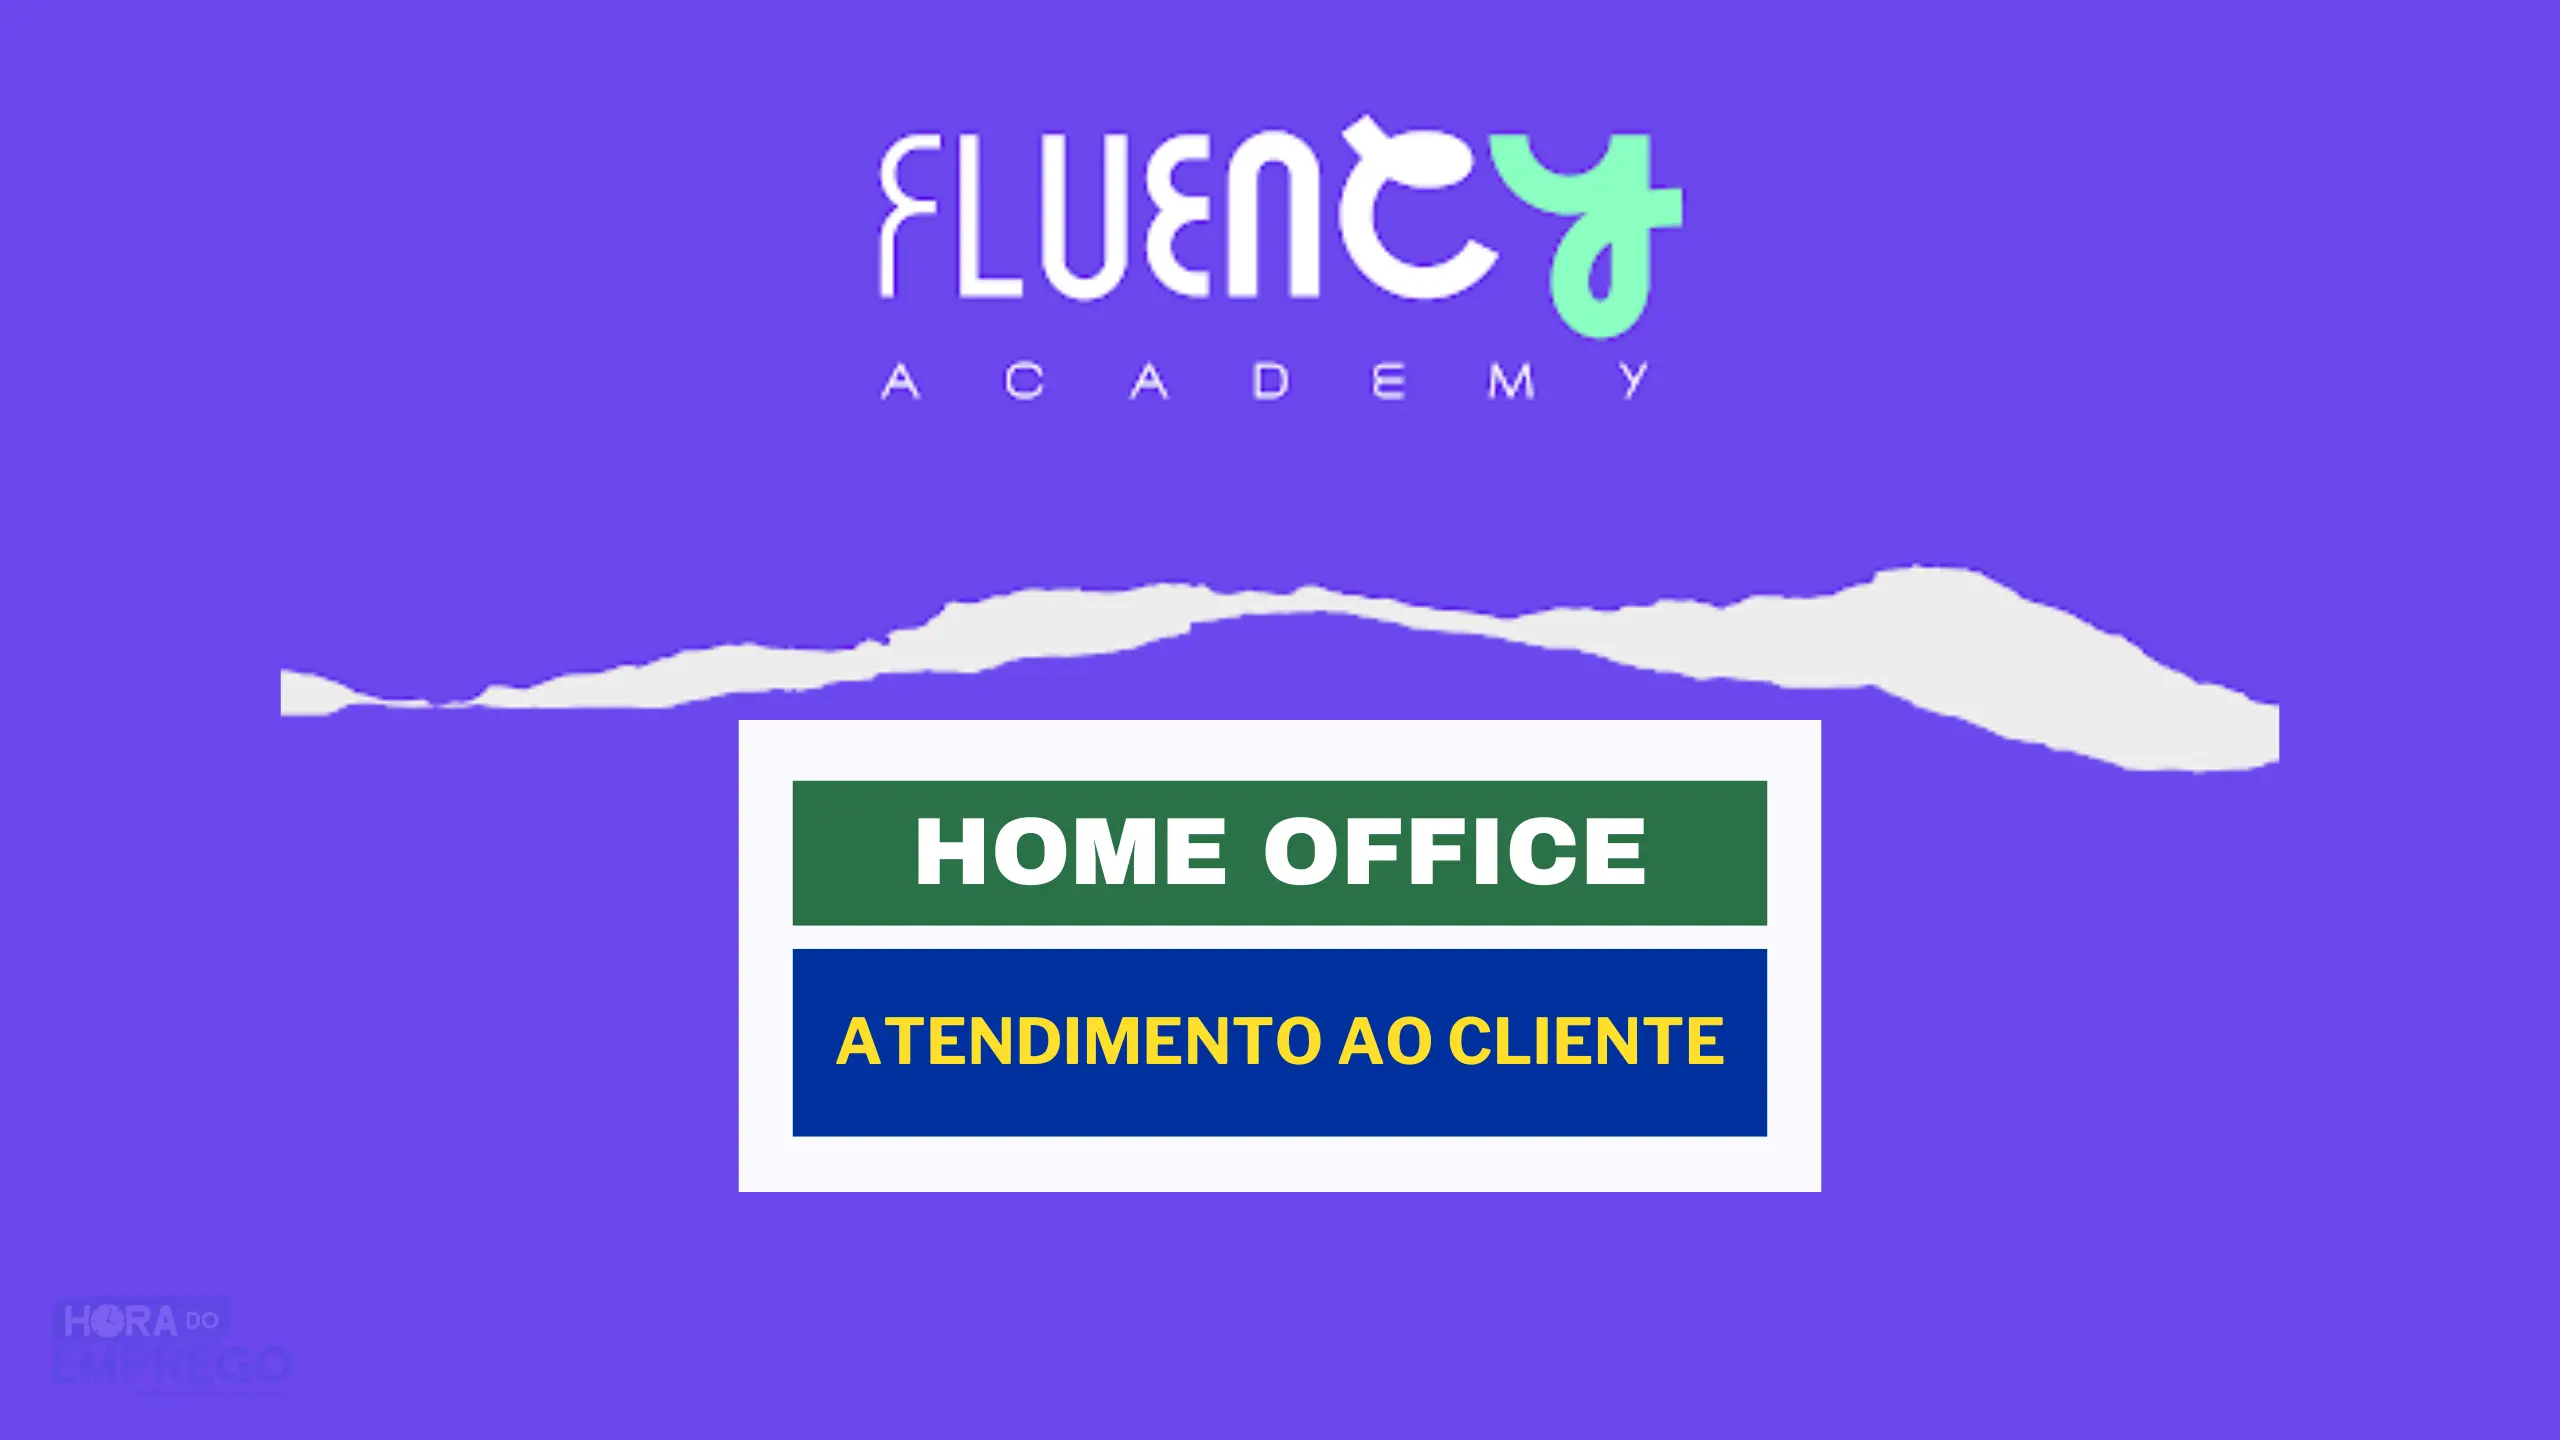 Fluency Academy abriu vaga HOME OFFICE para TRABALHAR DE CASA com Atendimento ao Cliente